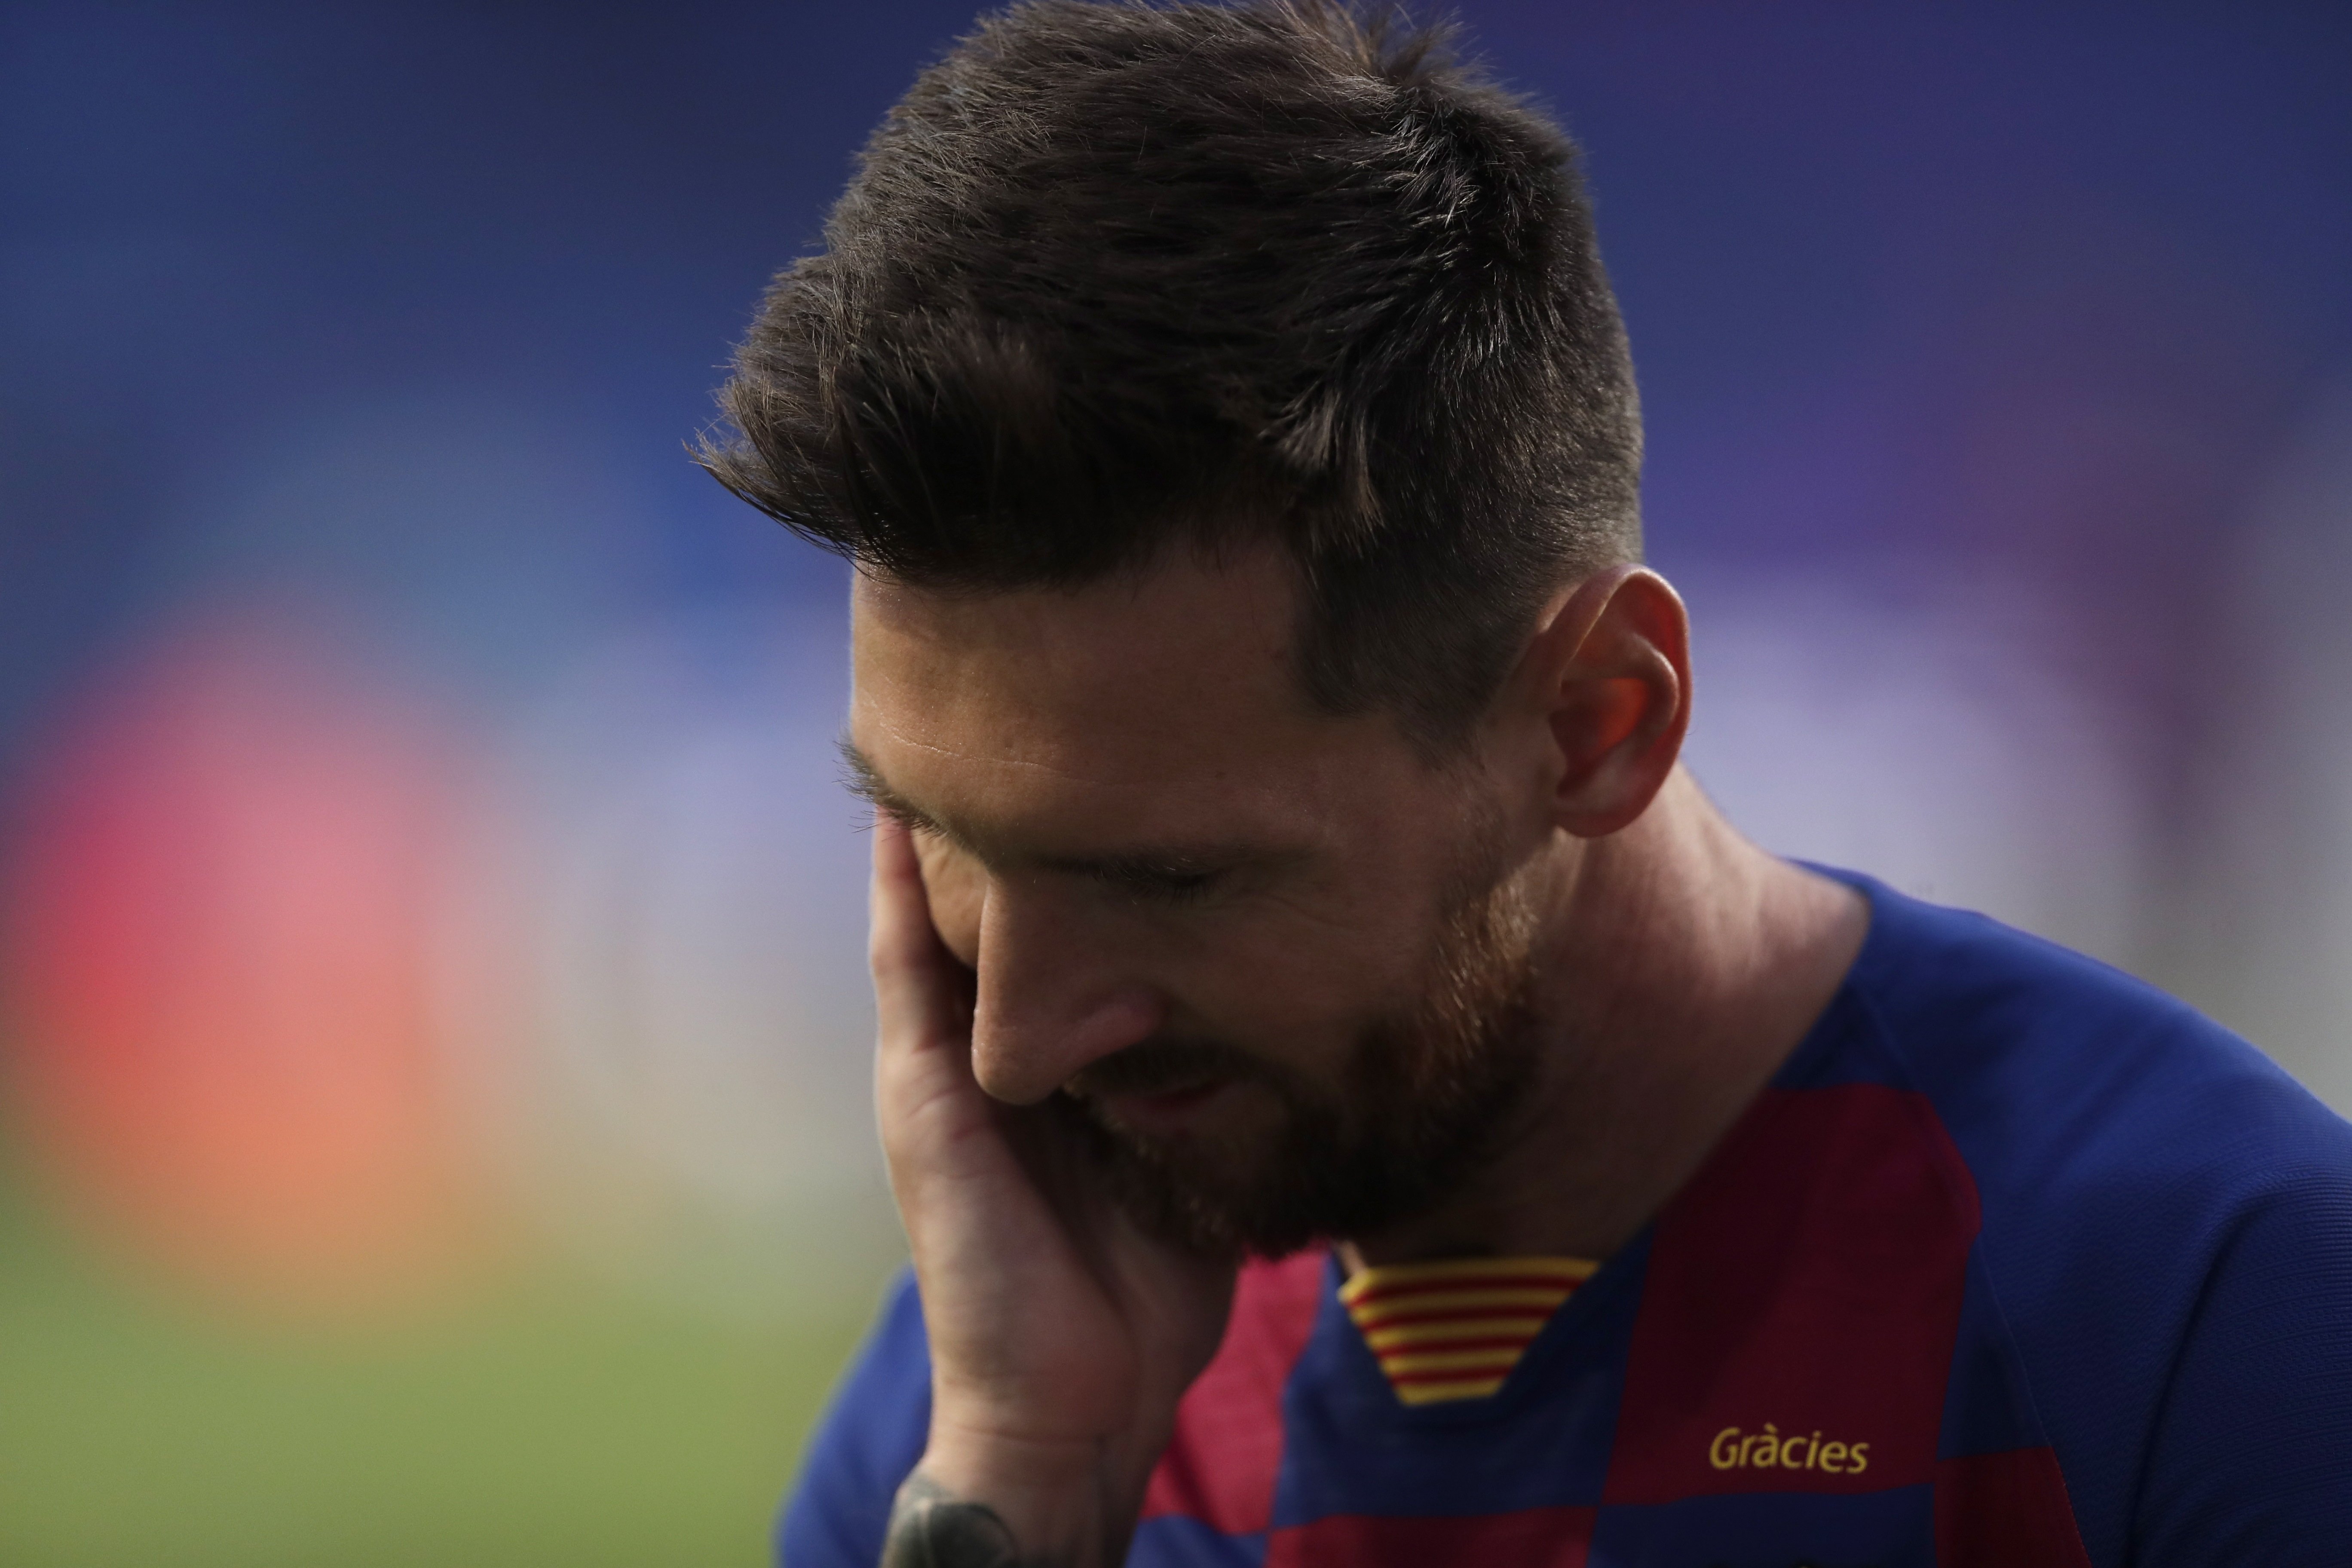 Creus que Messi abandonarà el Barça?